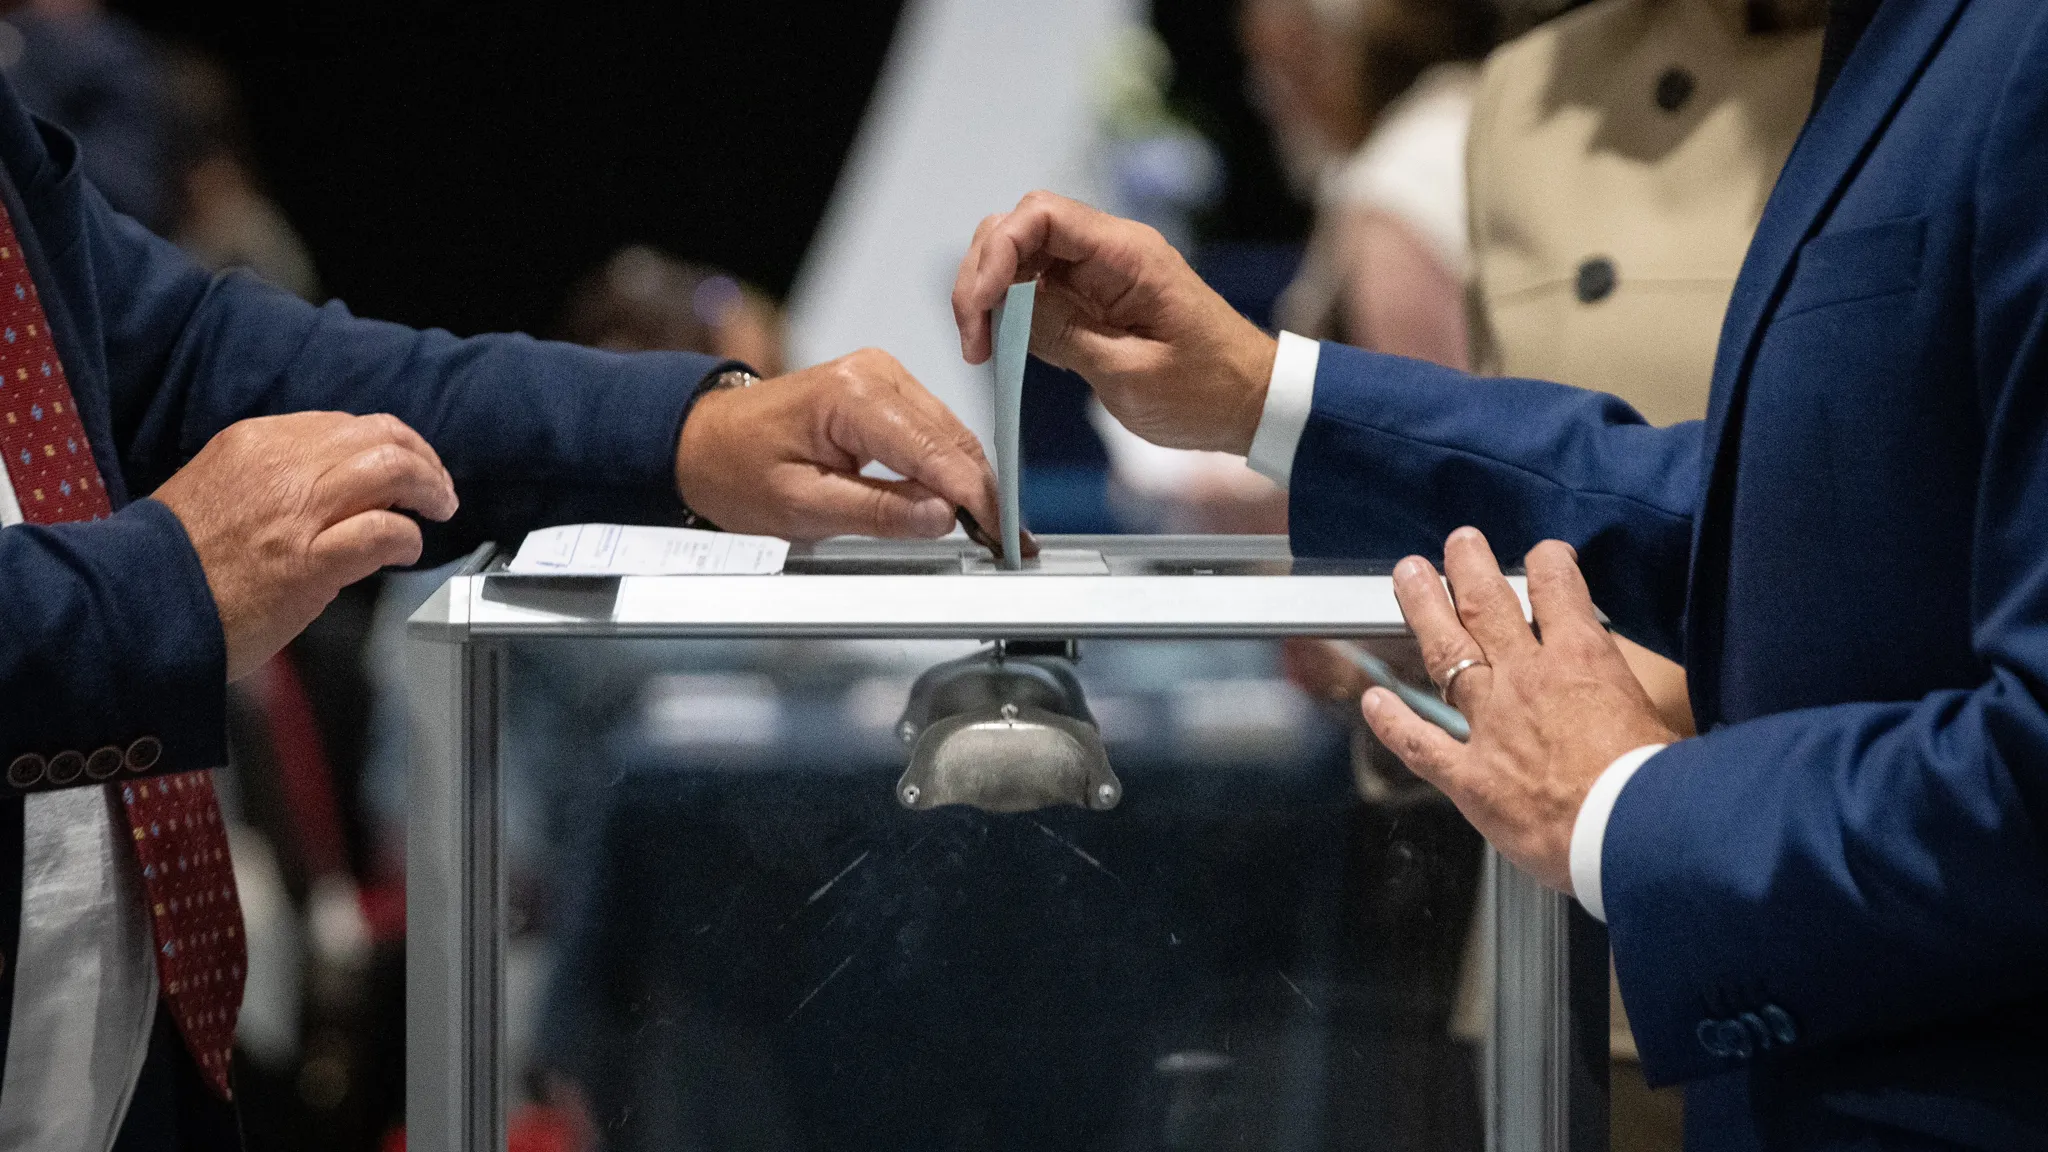 Francozi volijo nov parlament: Bo skrajni desnici uspelo utrditi vodstvo?